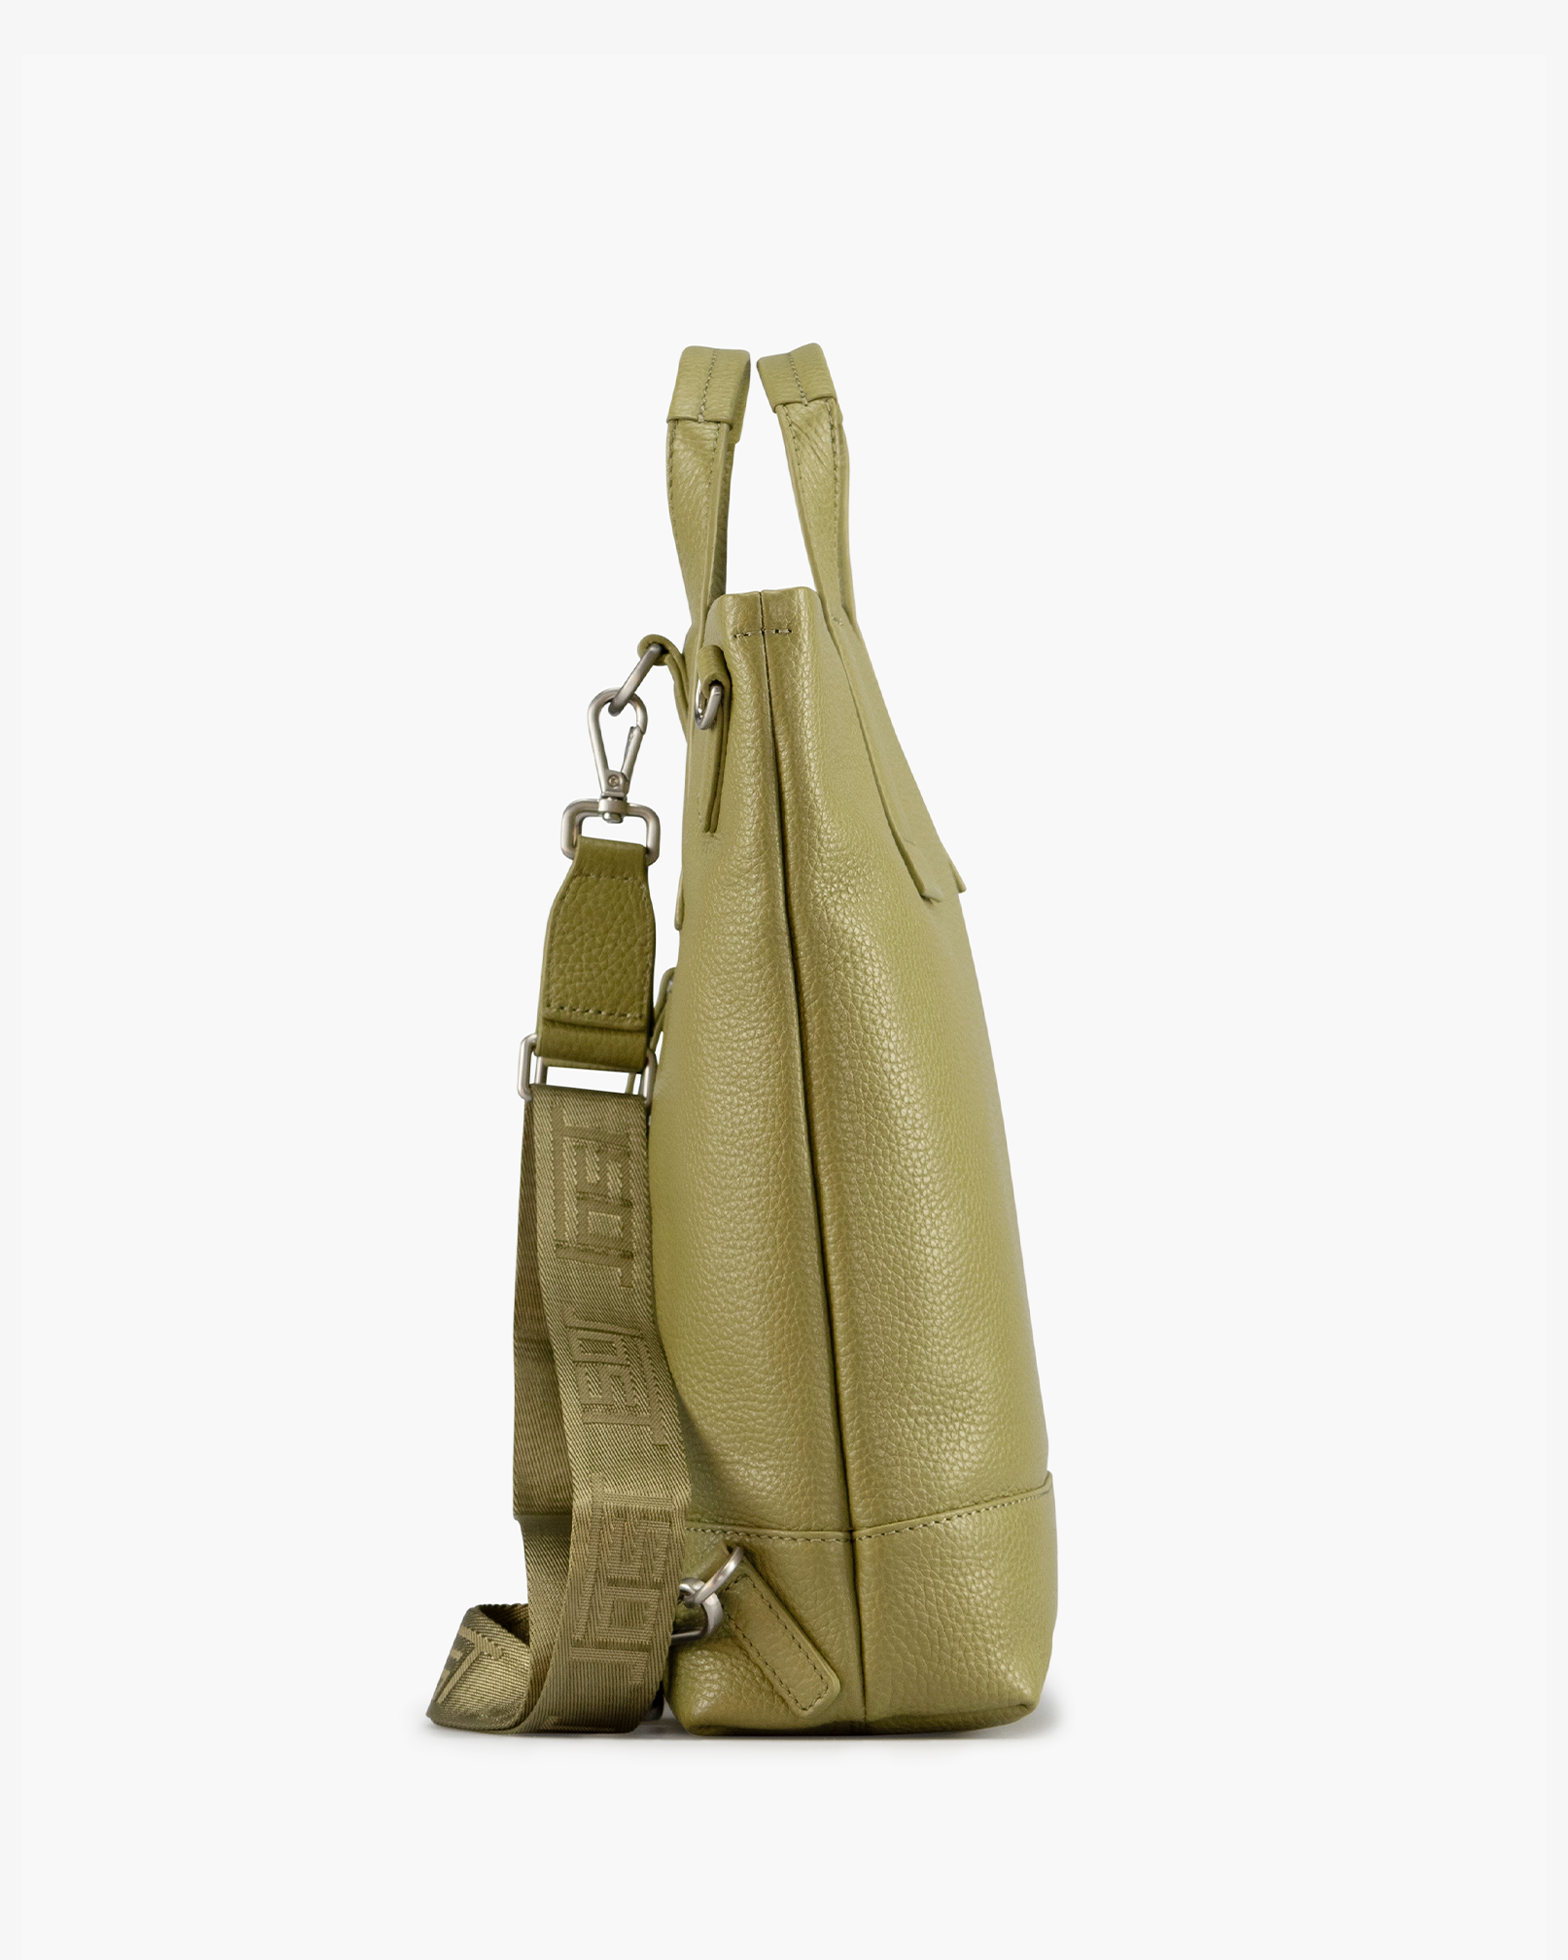 Jost Handtasche mit Rucksackfunktion Vika X-Change XS grün